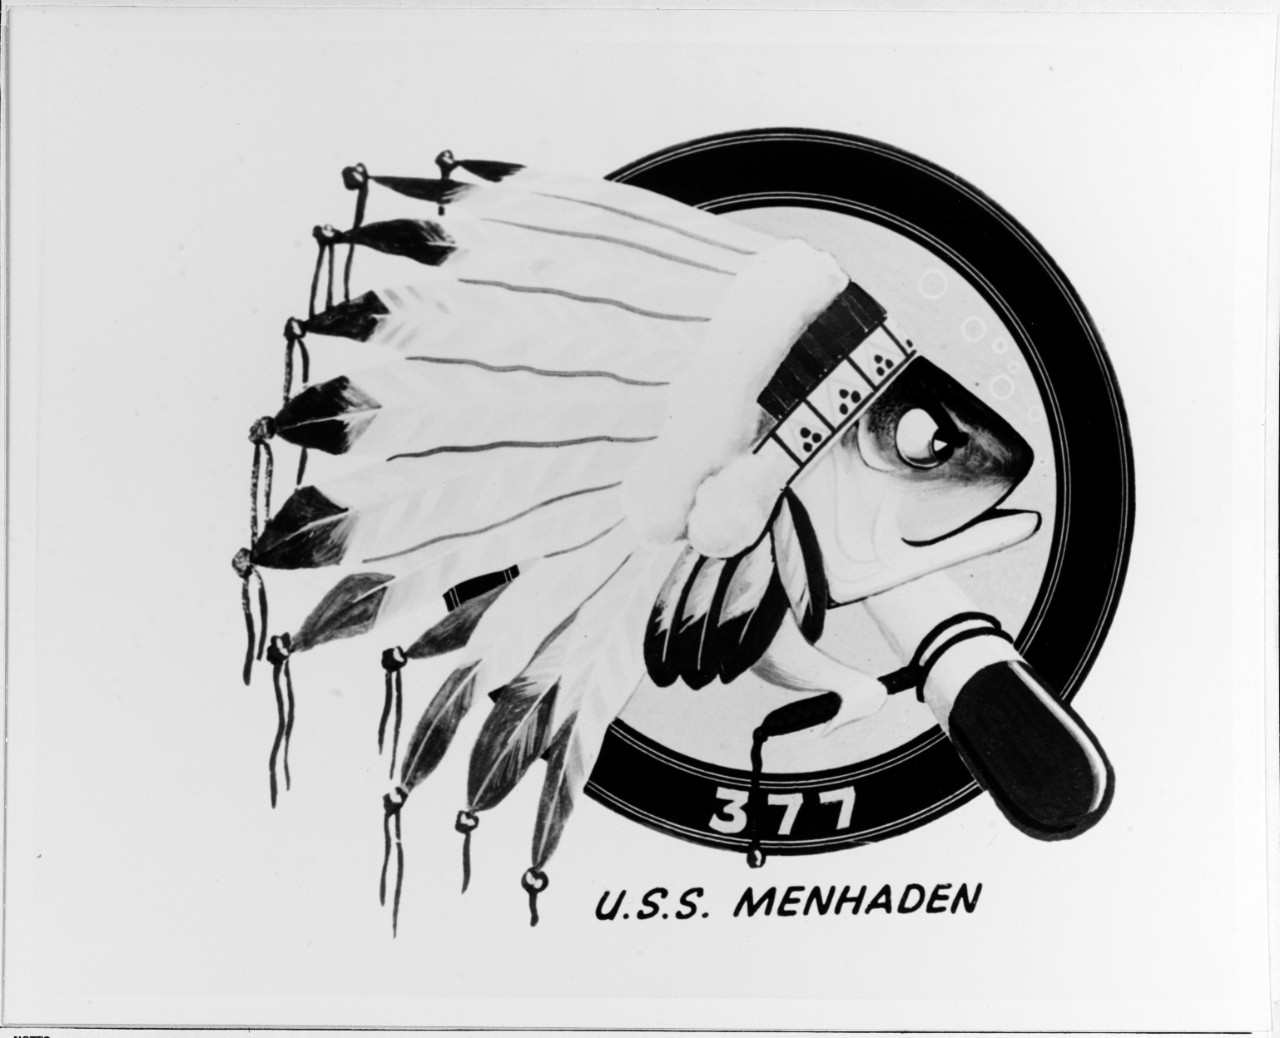 Insignia:  USS MENHADEN (SS-377)